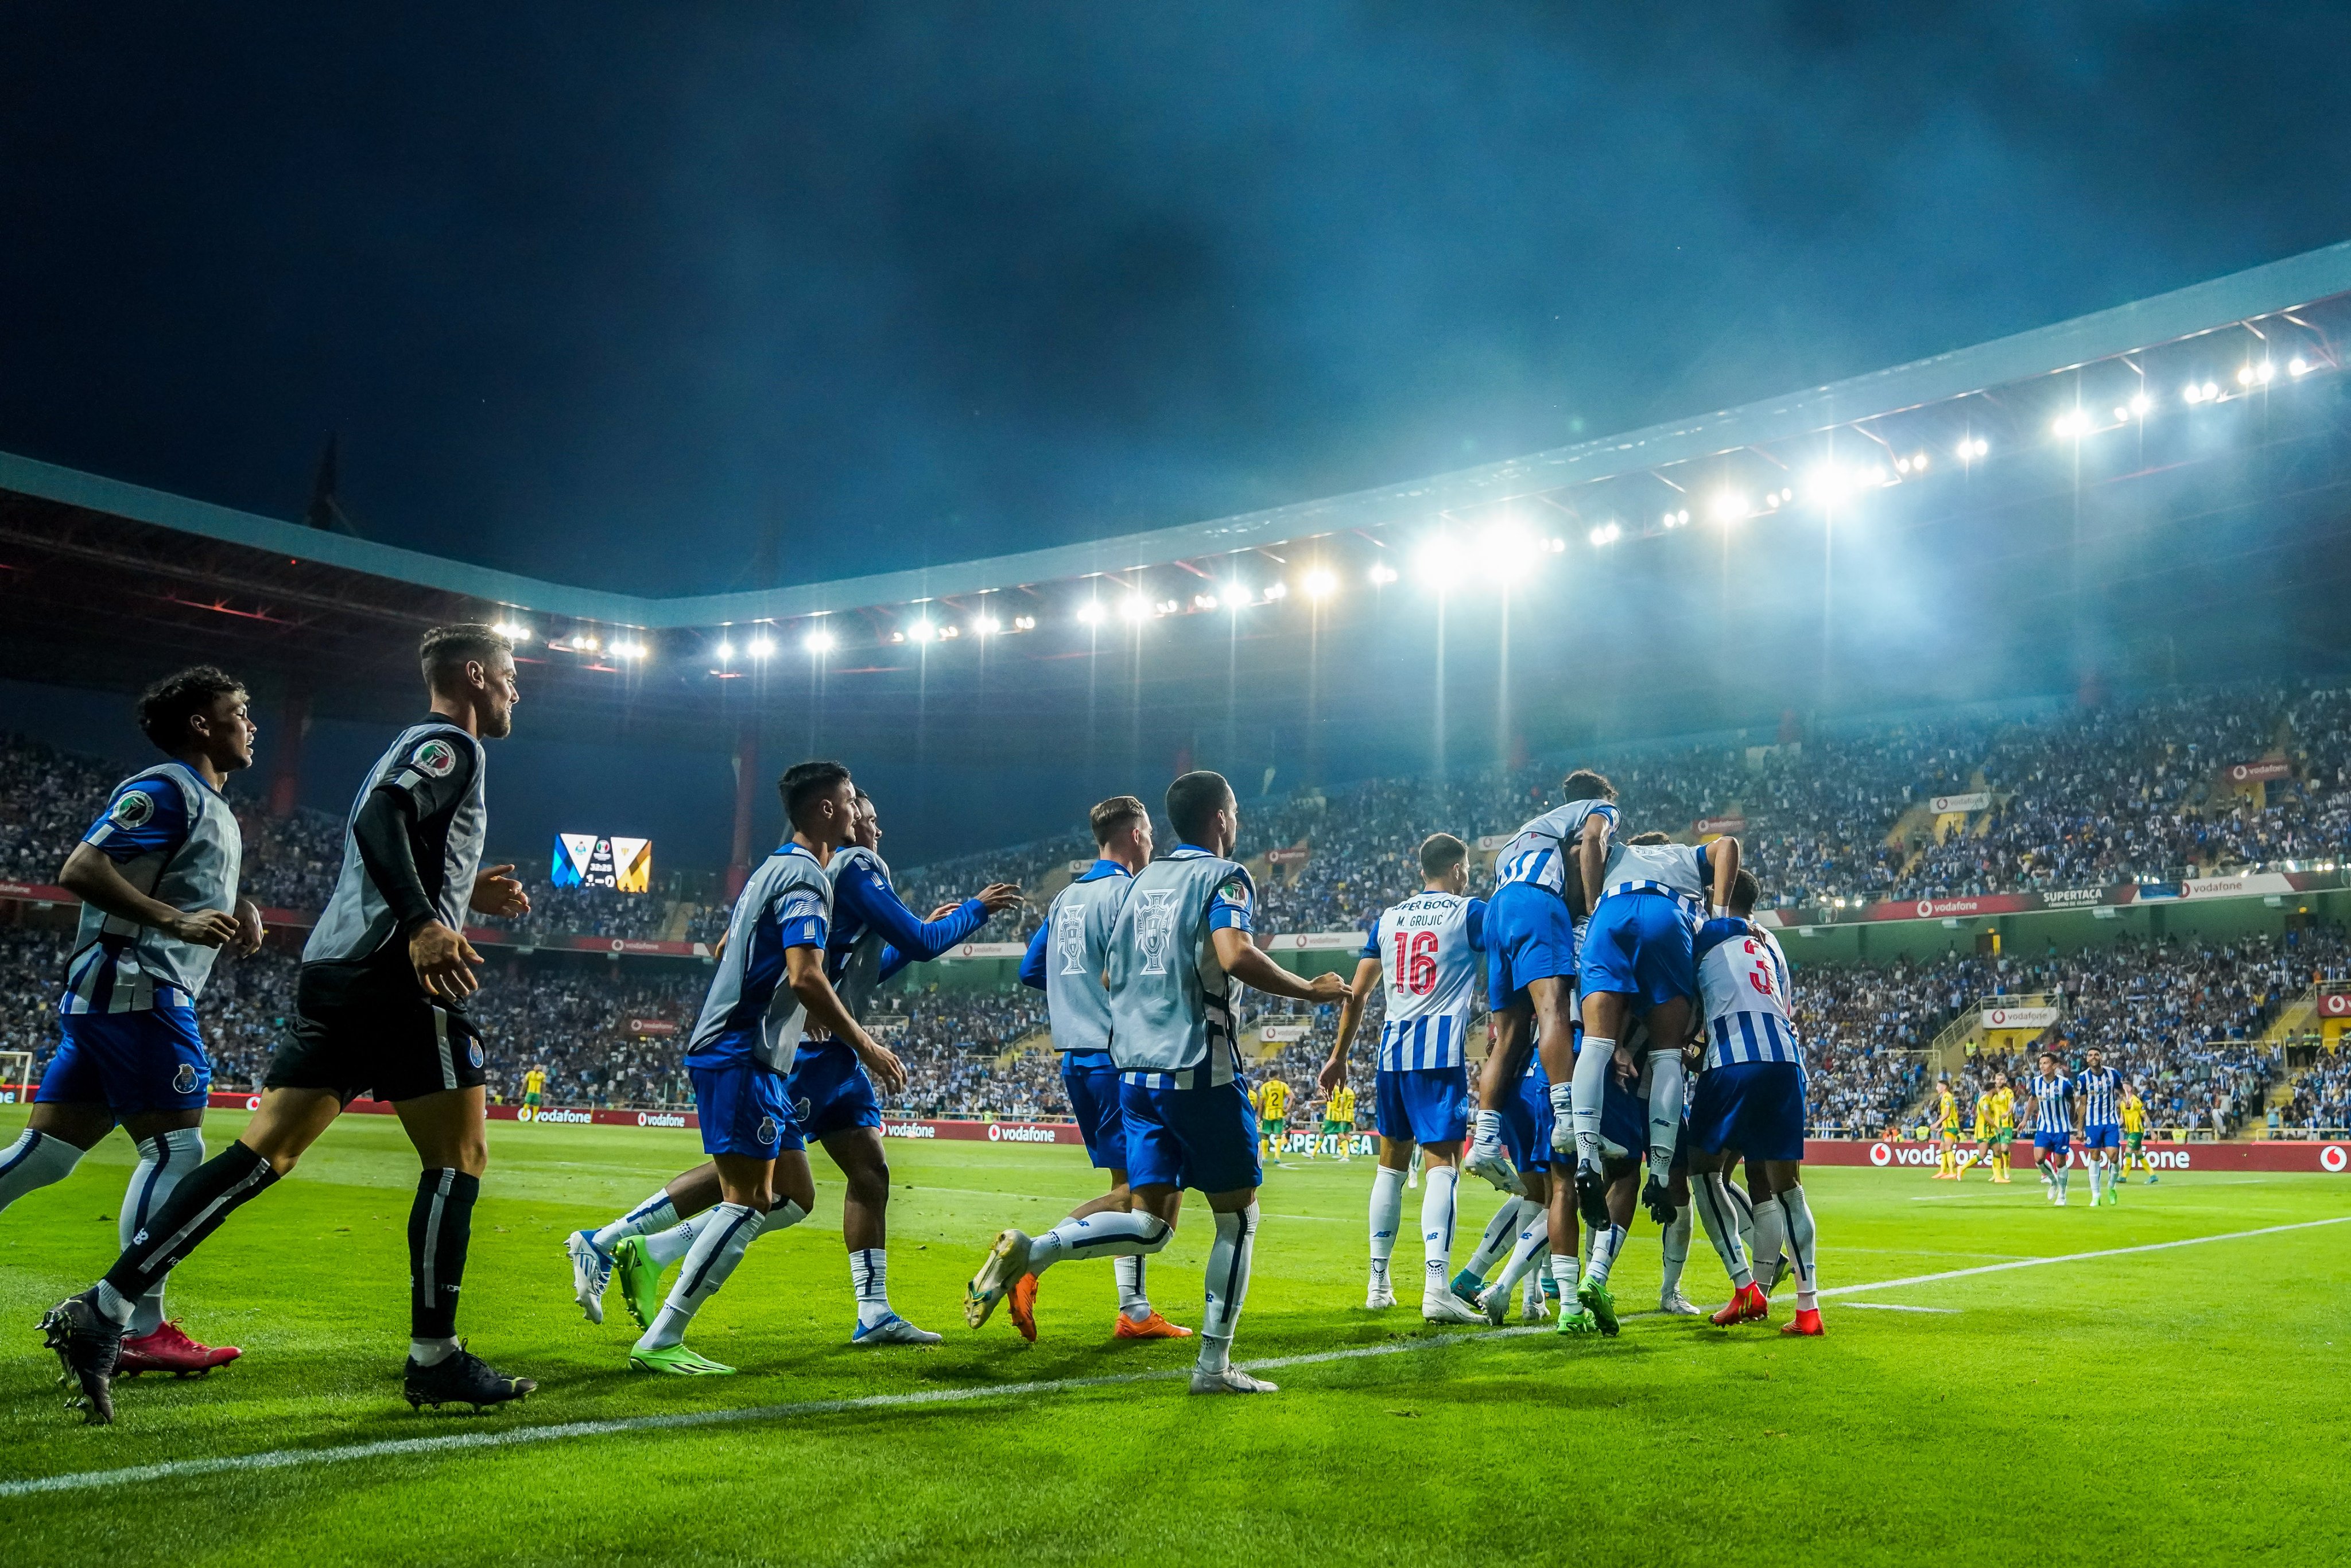 FC Porto on X: 💪 Sábado estamos #DeVolta 🐉 🔵⚪ Esperamos por